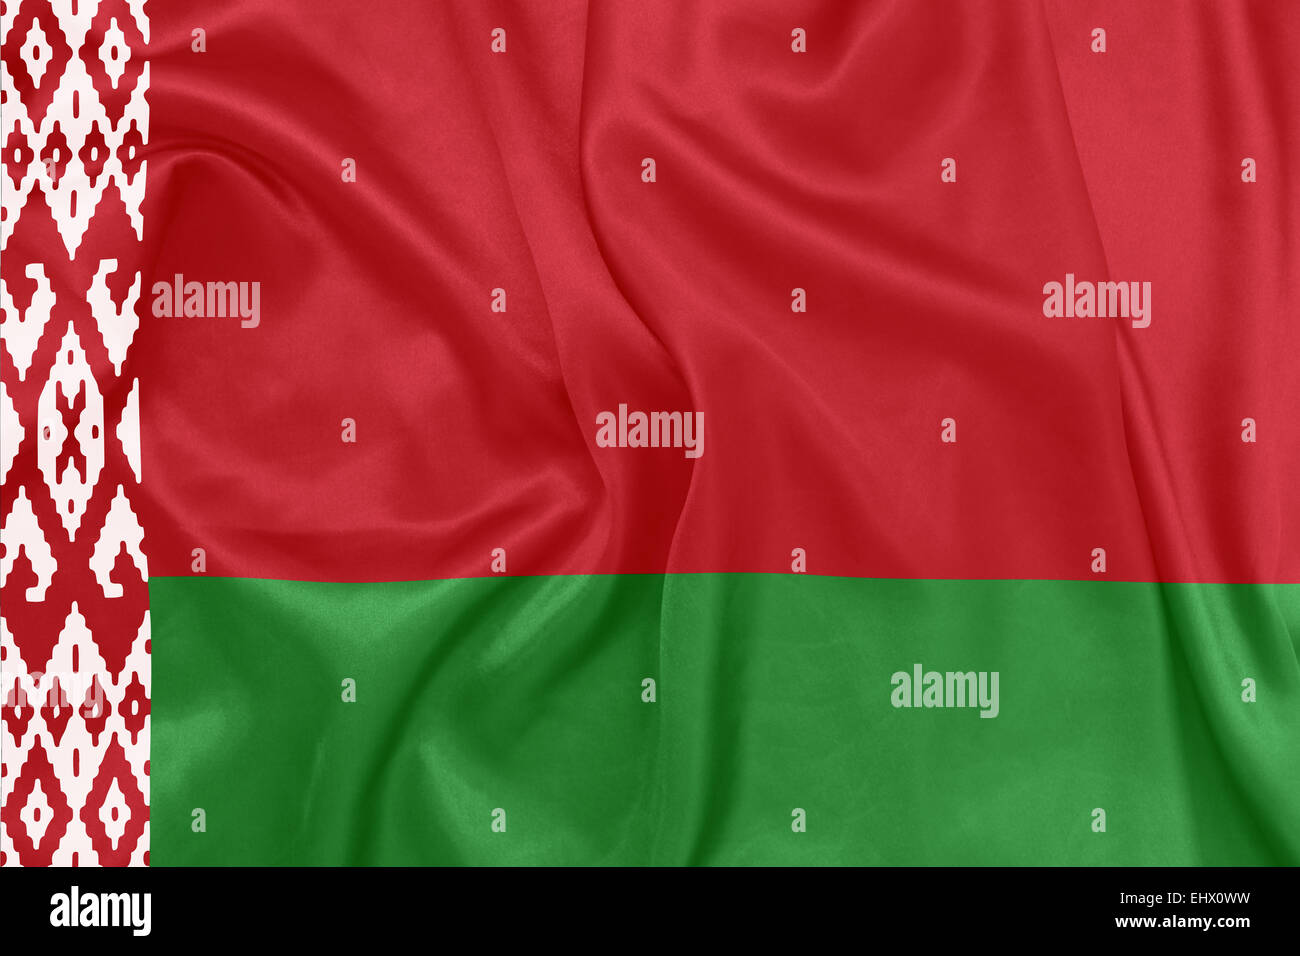 Bielorussia - sventola bandiera nazionale sulla tessitura della seta Foto Stock